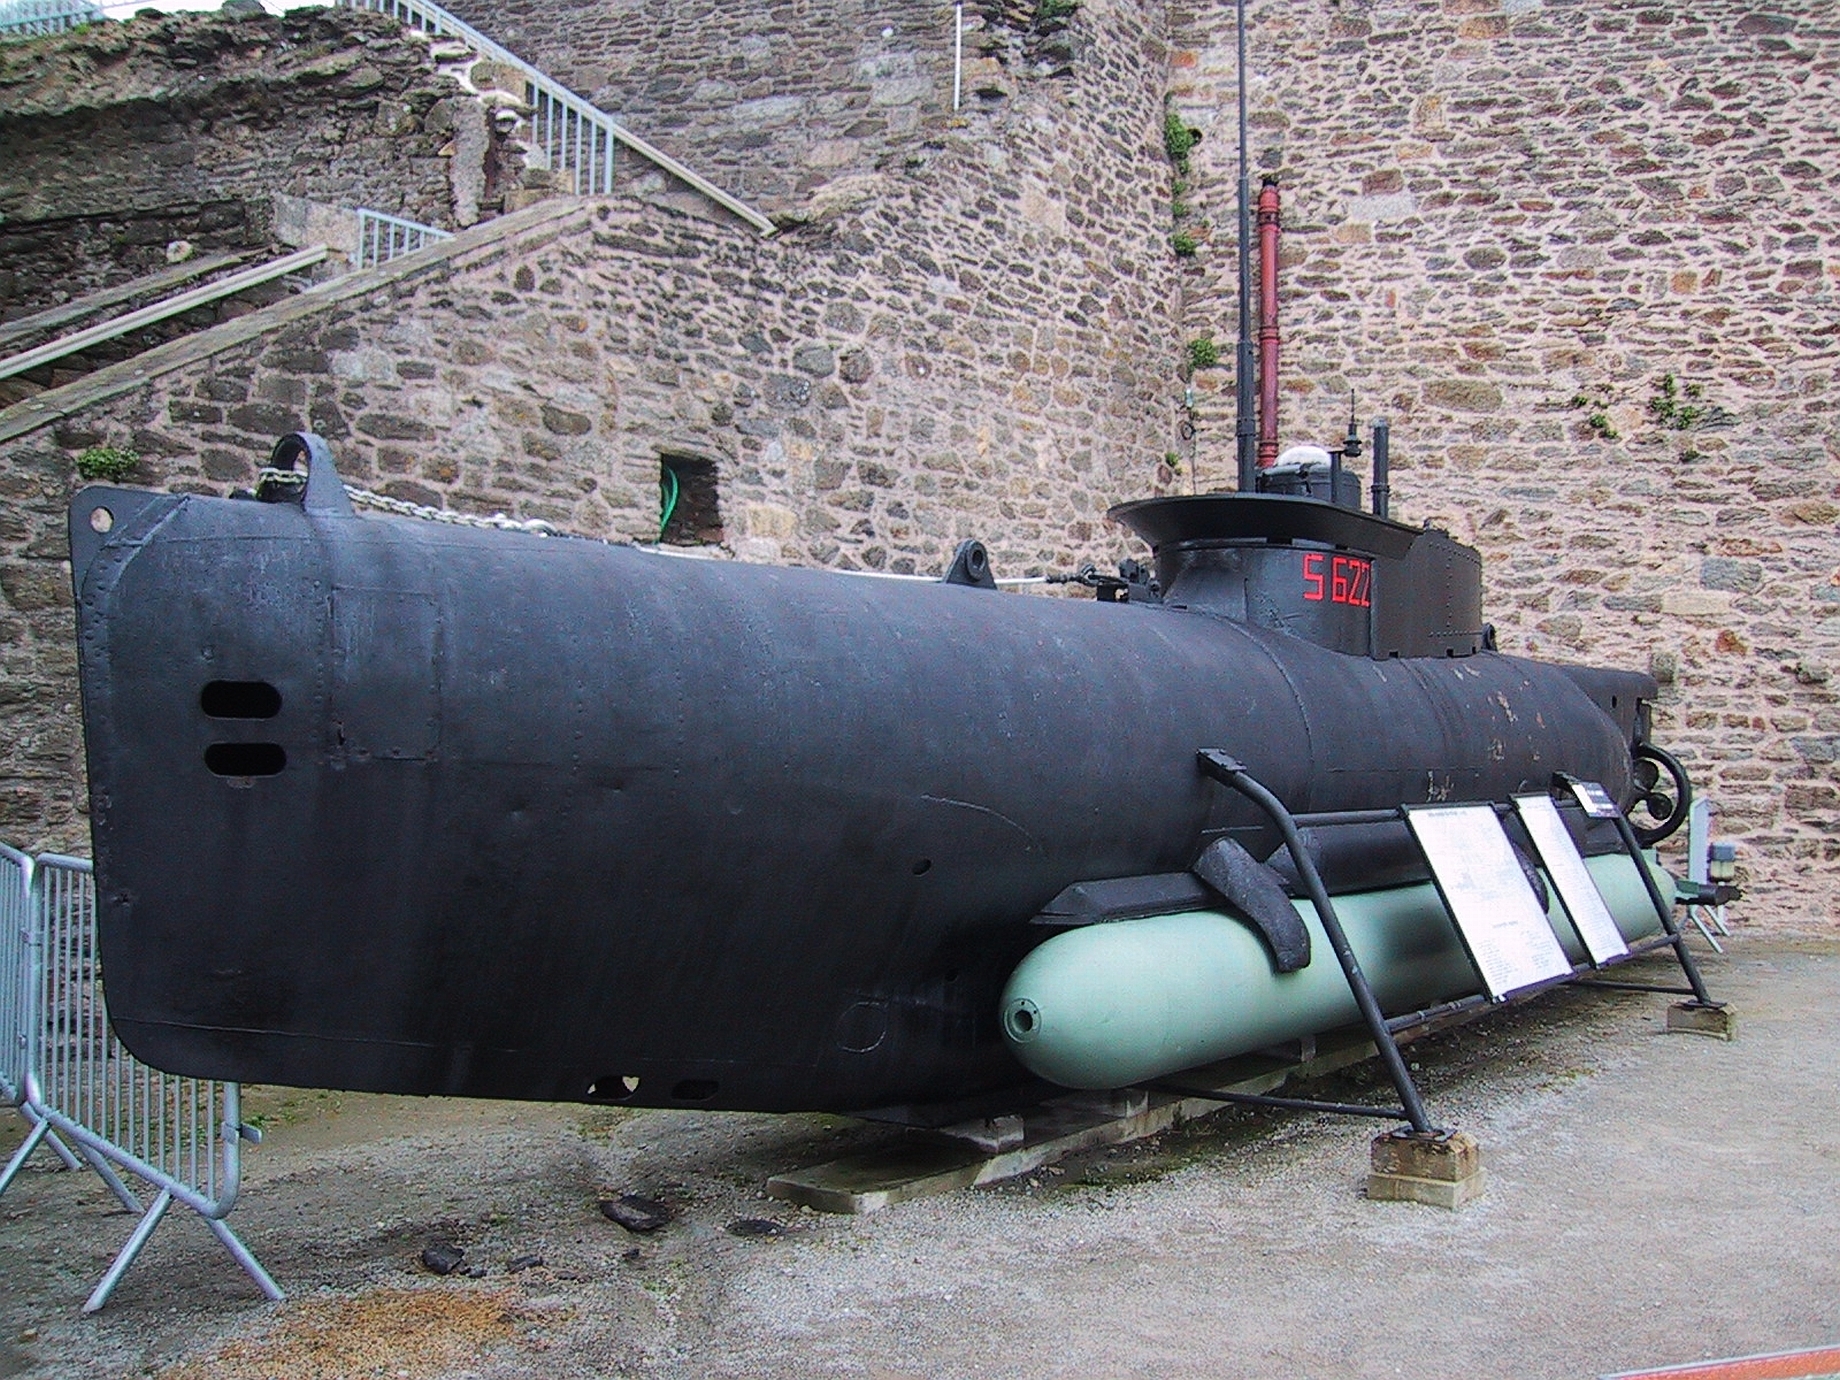 Большая торпеда. Seehund подводная лодка. Сверхмалая подводная лодка Зеехунд. Зеехунд подводная лодка. Мини подводная лодка Зеехунд.